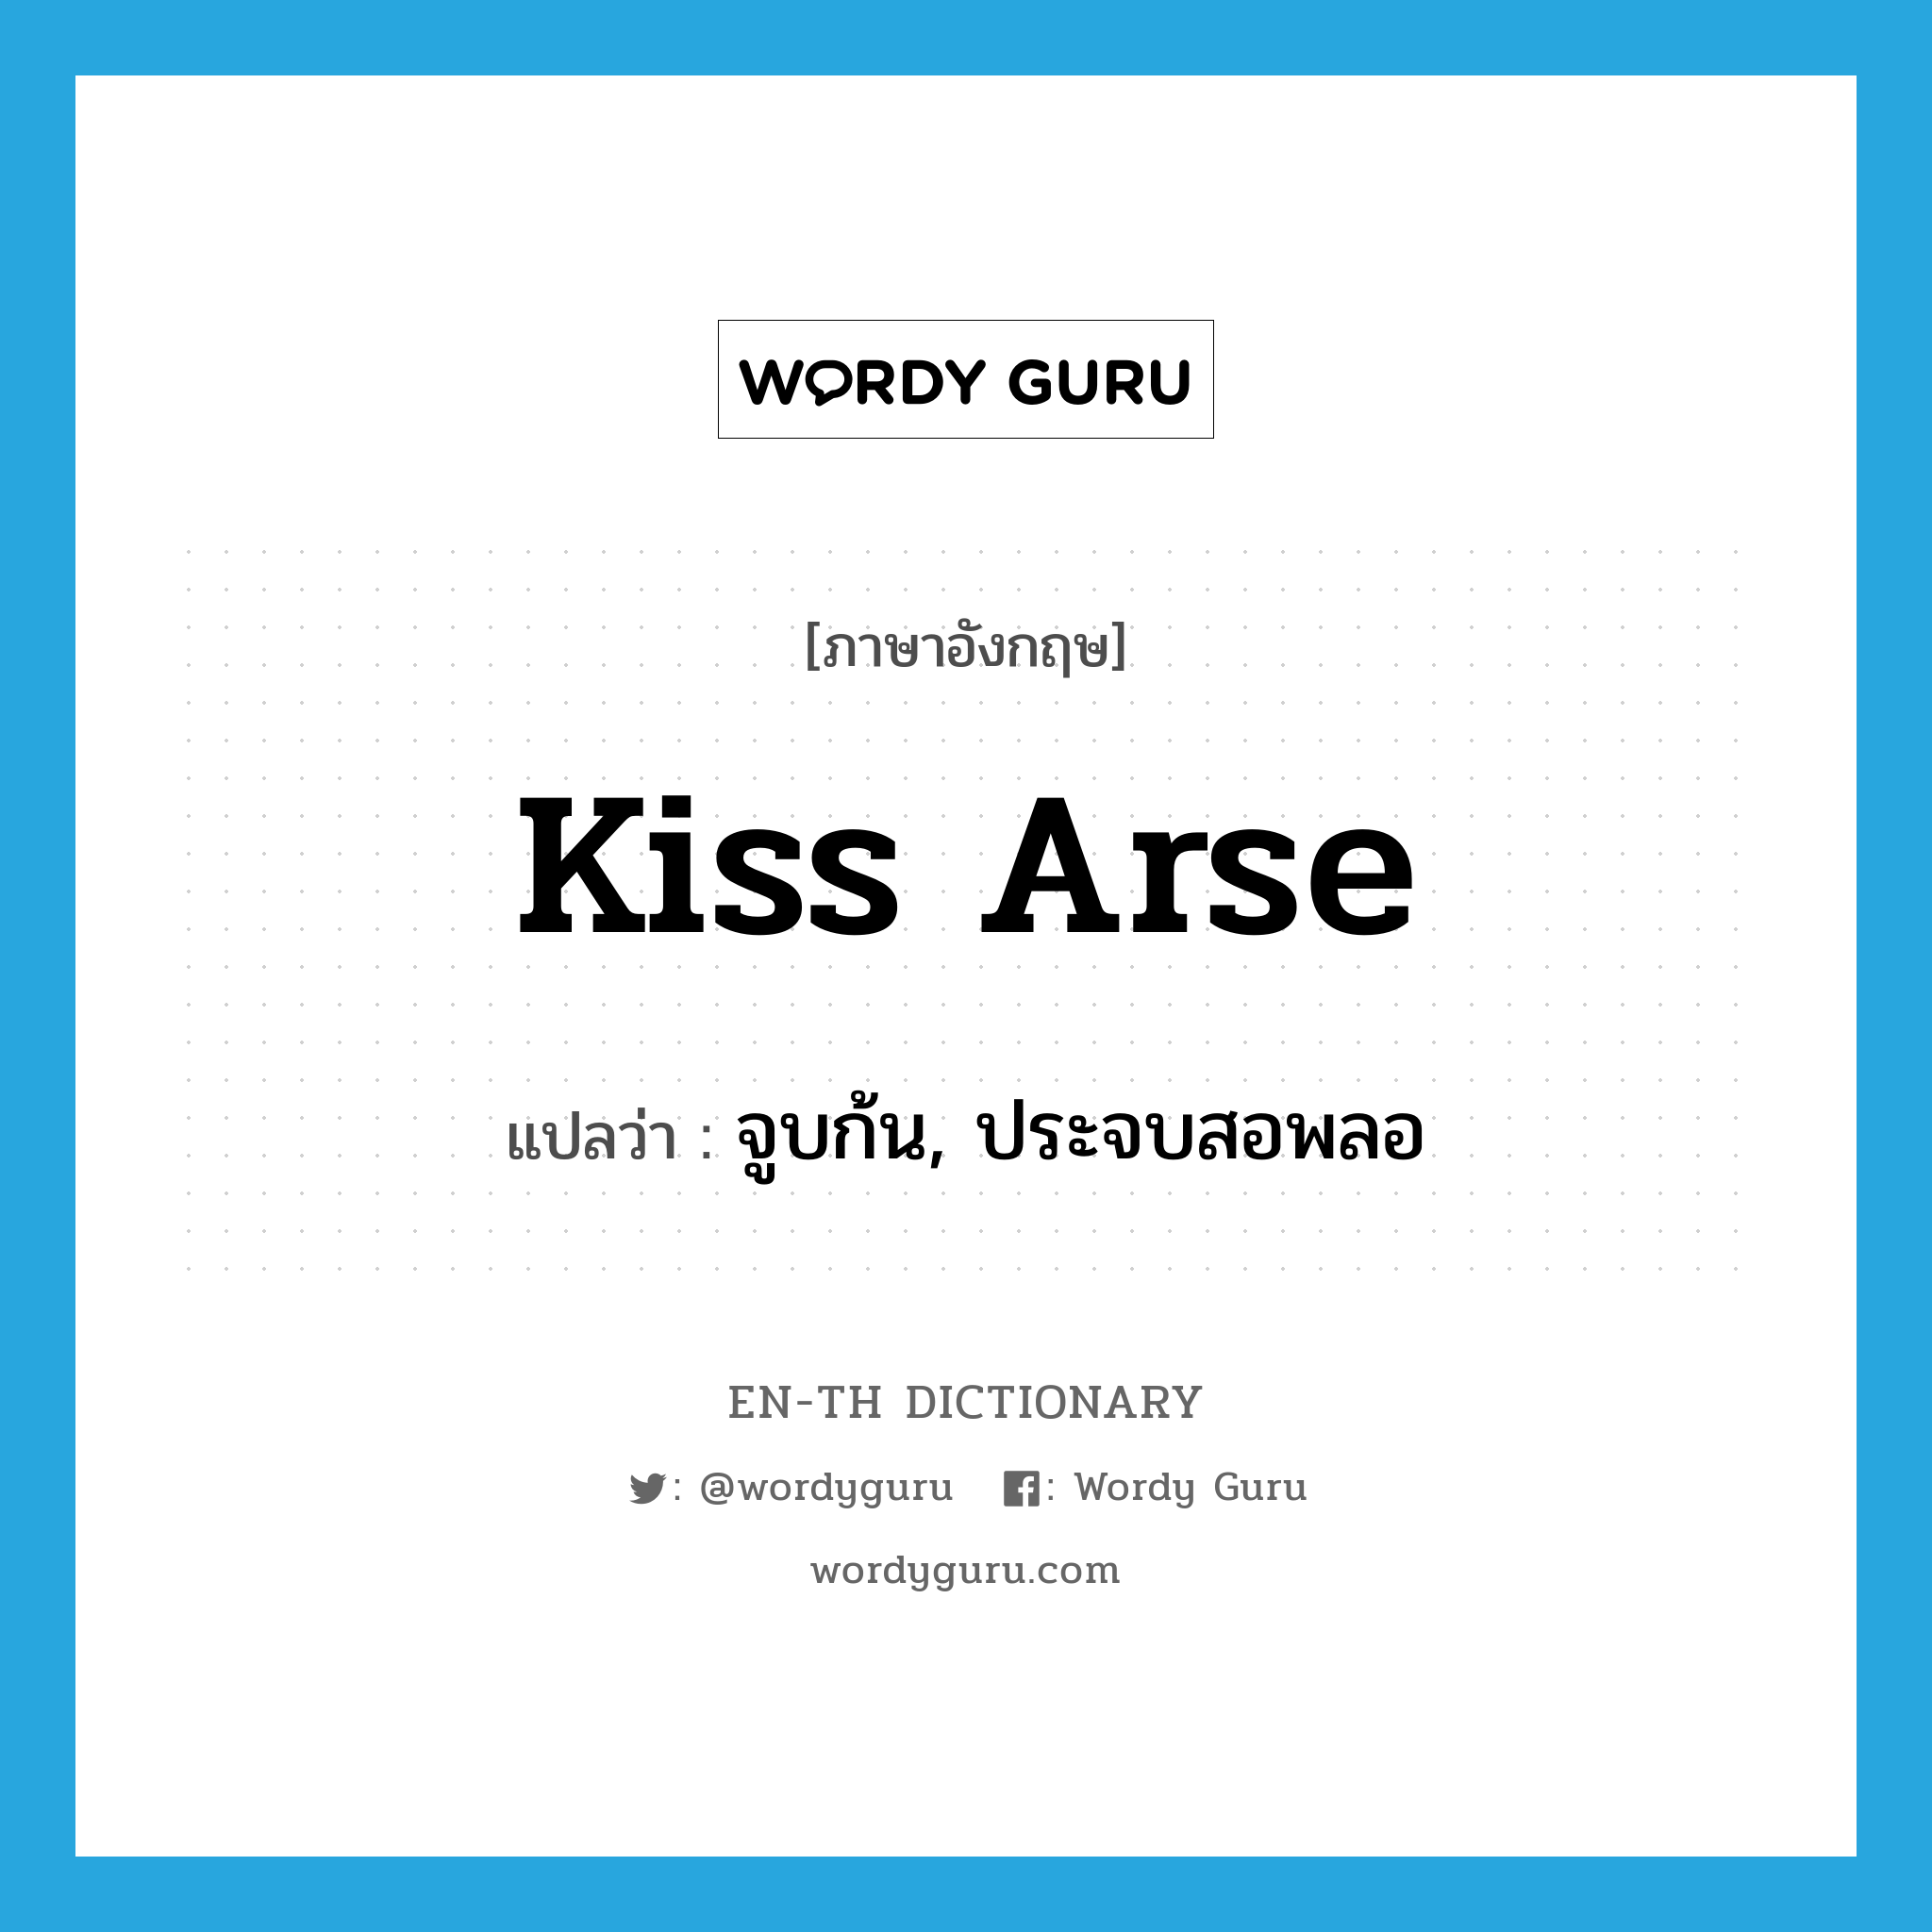 จูบก้น, ประจบสอพลอ ภาษาอังกฤษ?, คำศัพท์ภาษาอังกฤษ จูบก้น, ประจบสอพลอ แปลว่า kiss arse ประเภท SL หมวด SL